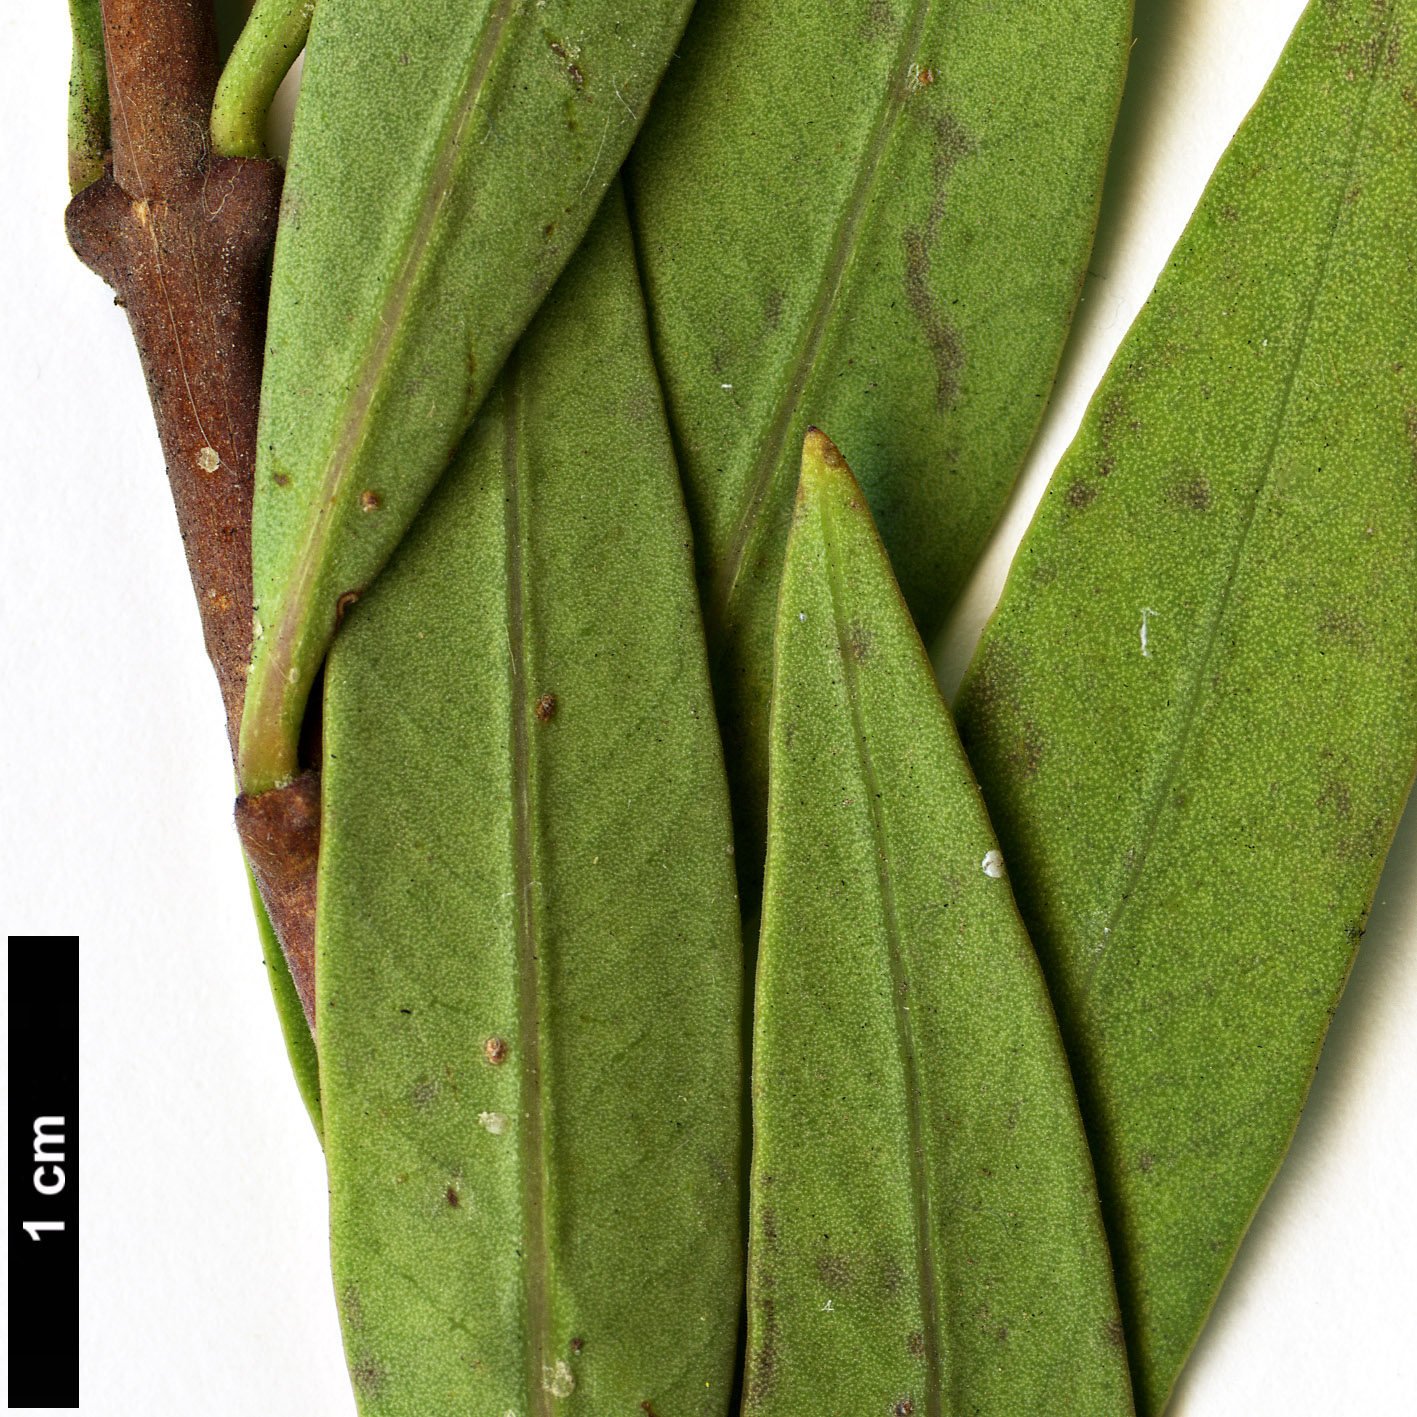 High resolution image: Family: Apocynaceae - Genus: Periploca - Taxon: laevigata